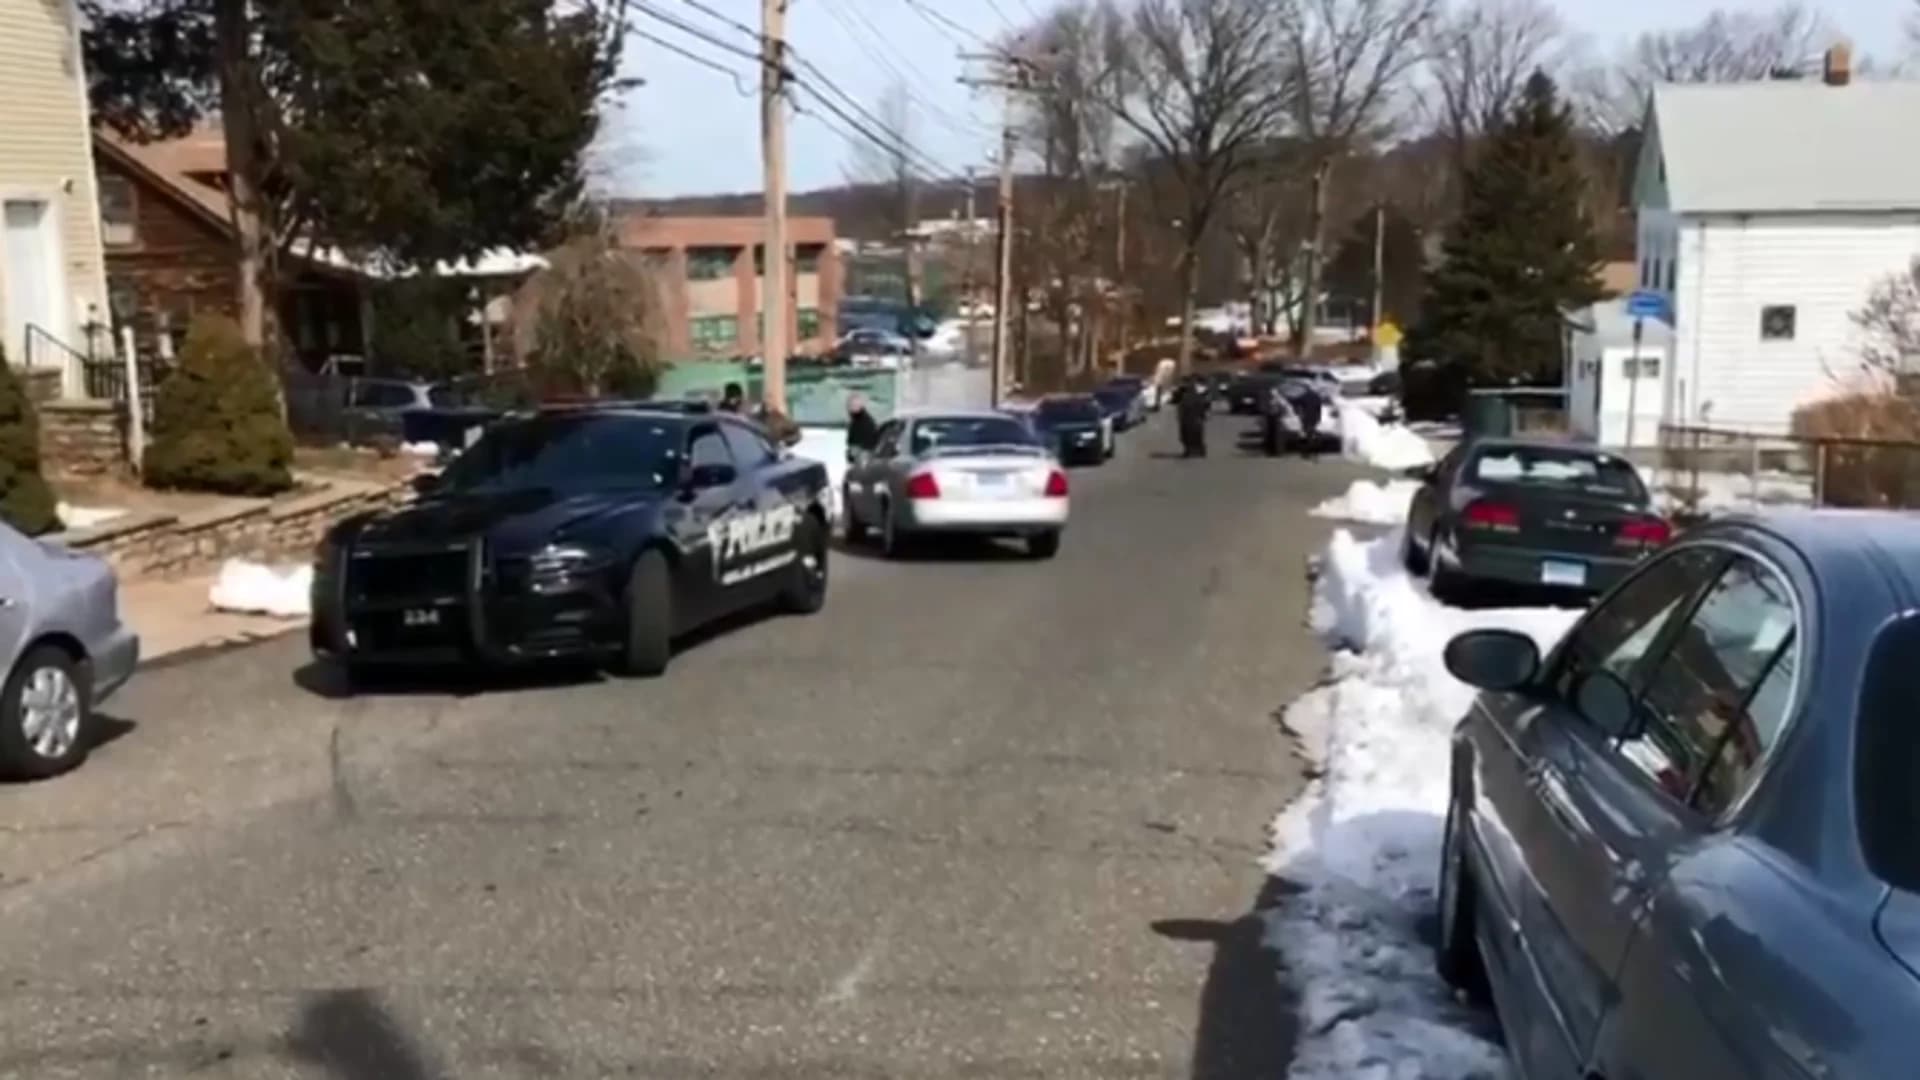 Bridgeport shooting spurs lockdown at nearby schools